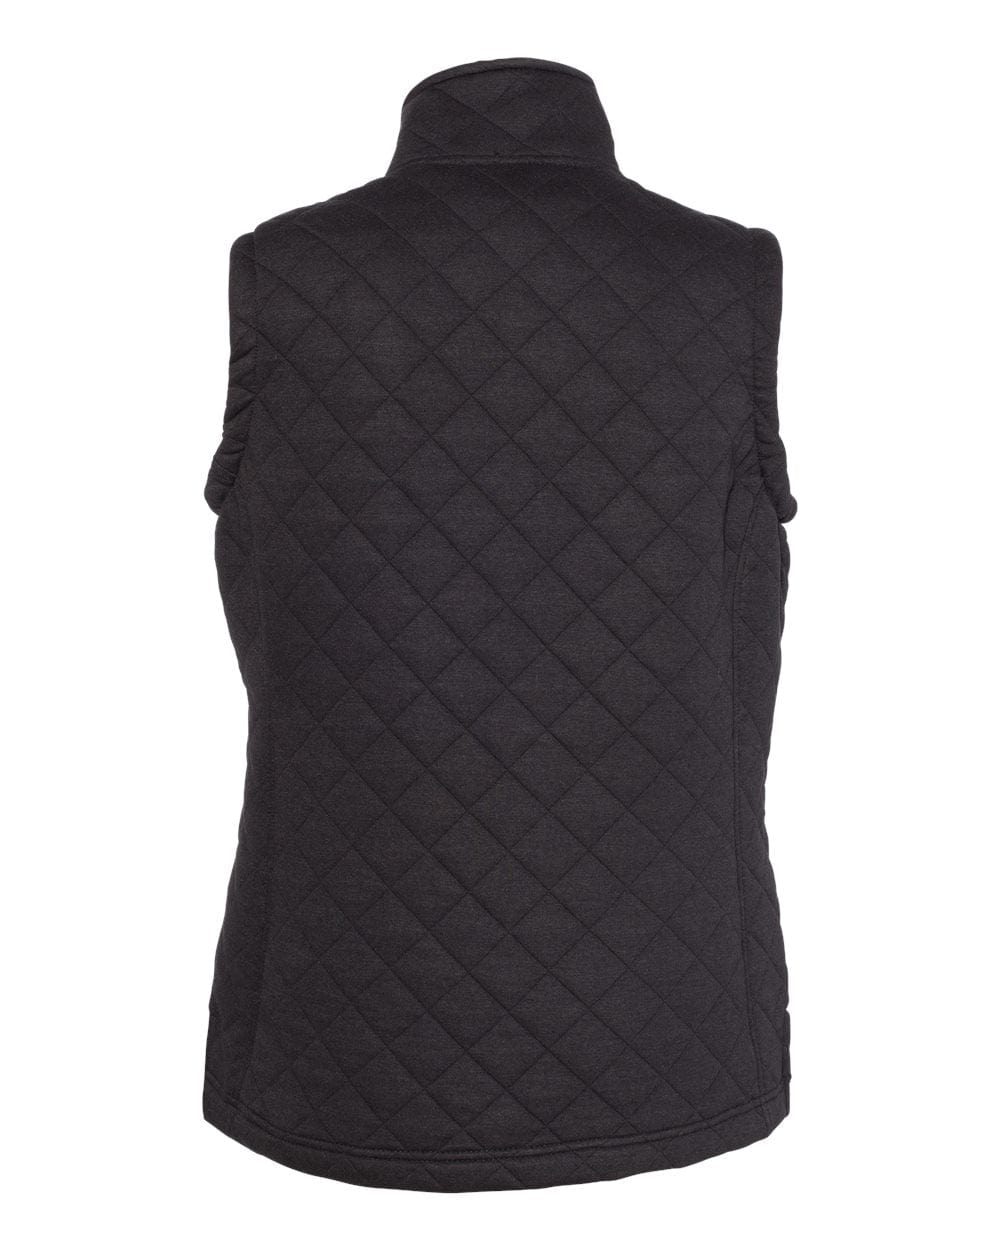 PBPRO Women's Apparel Sale PBPRO™ Black Performance Quilted Full Zip Vest - Black (Only M, L)